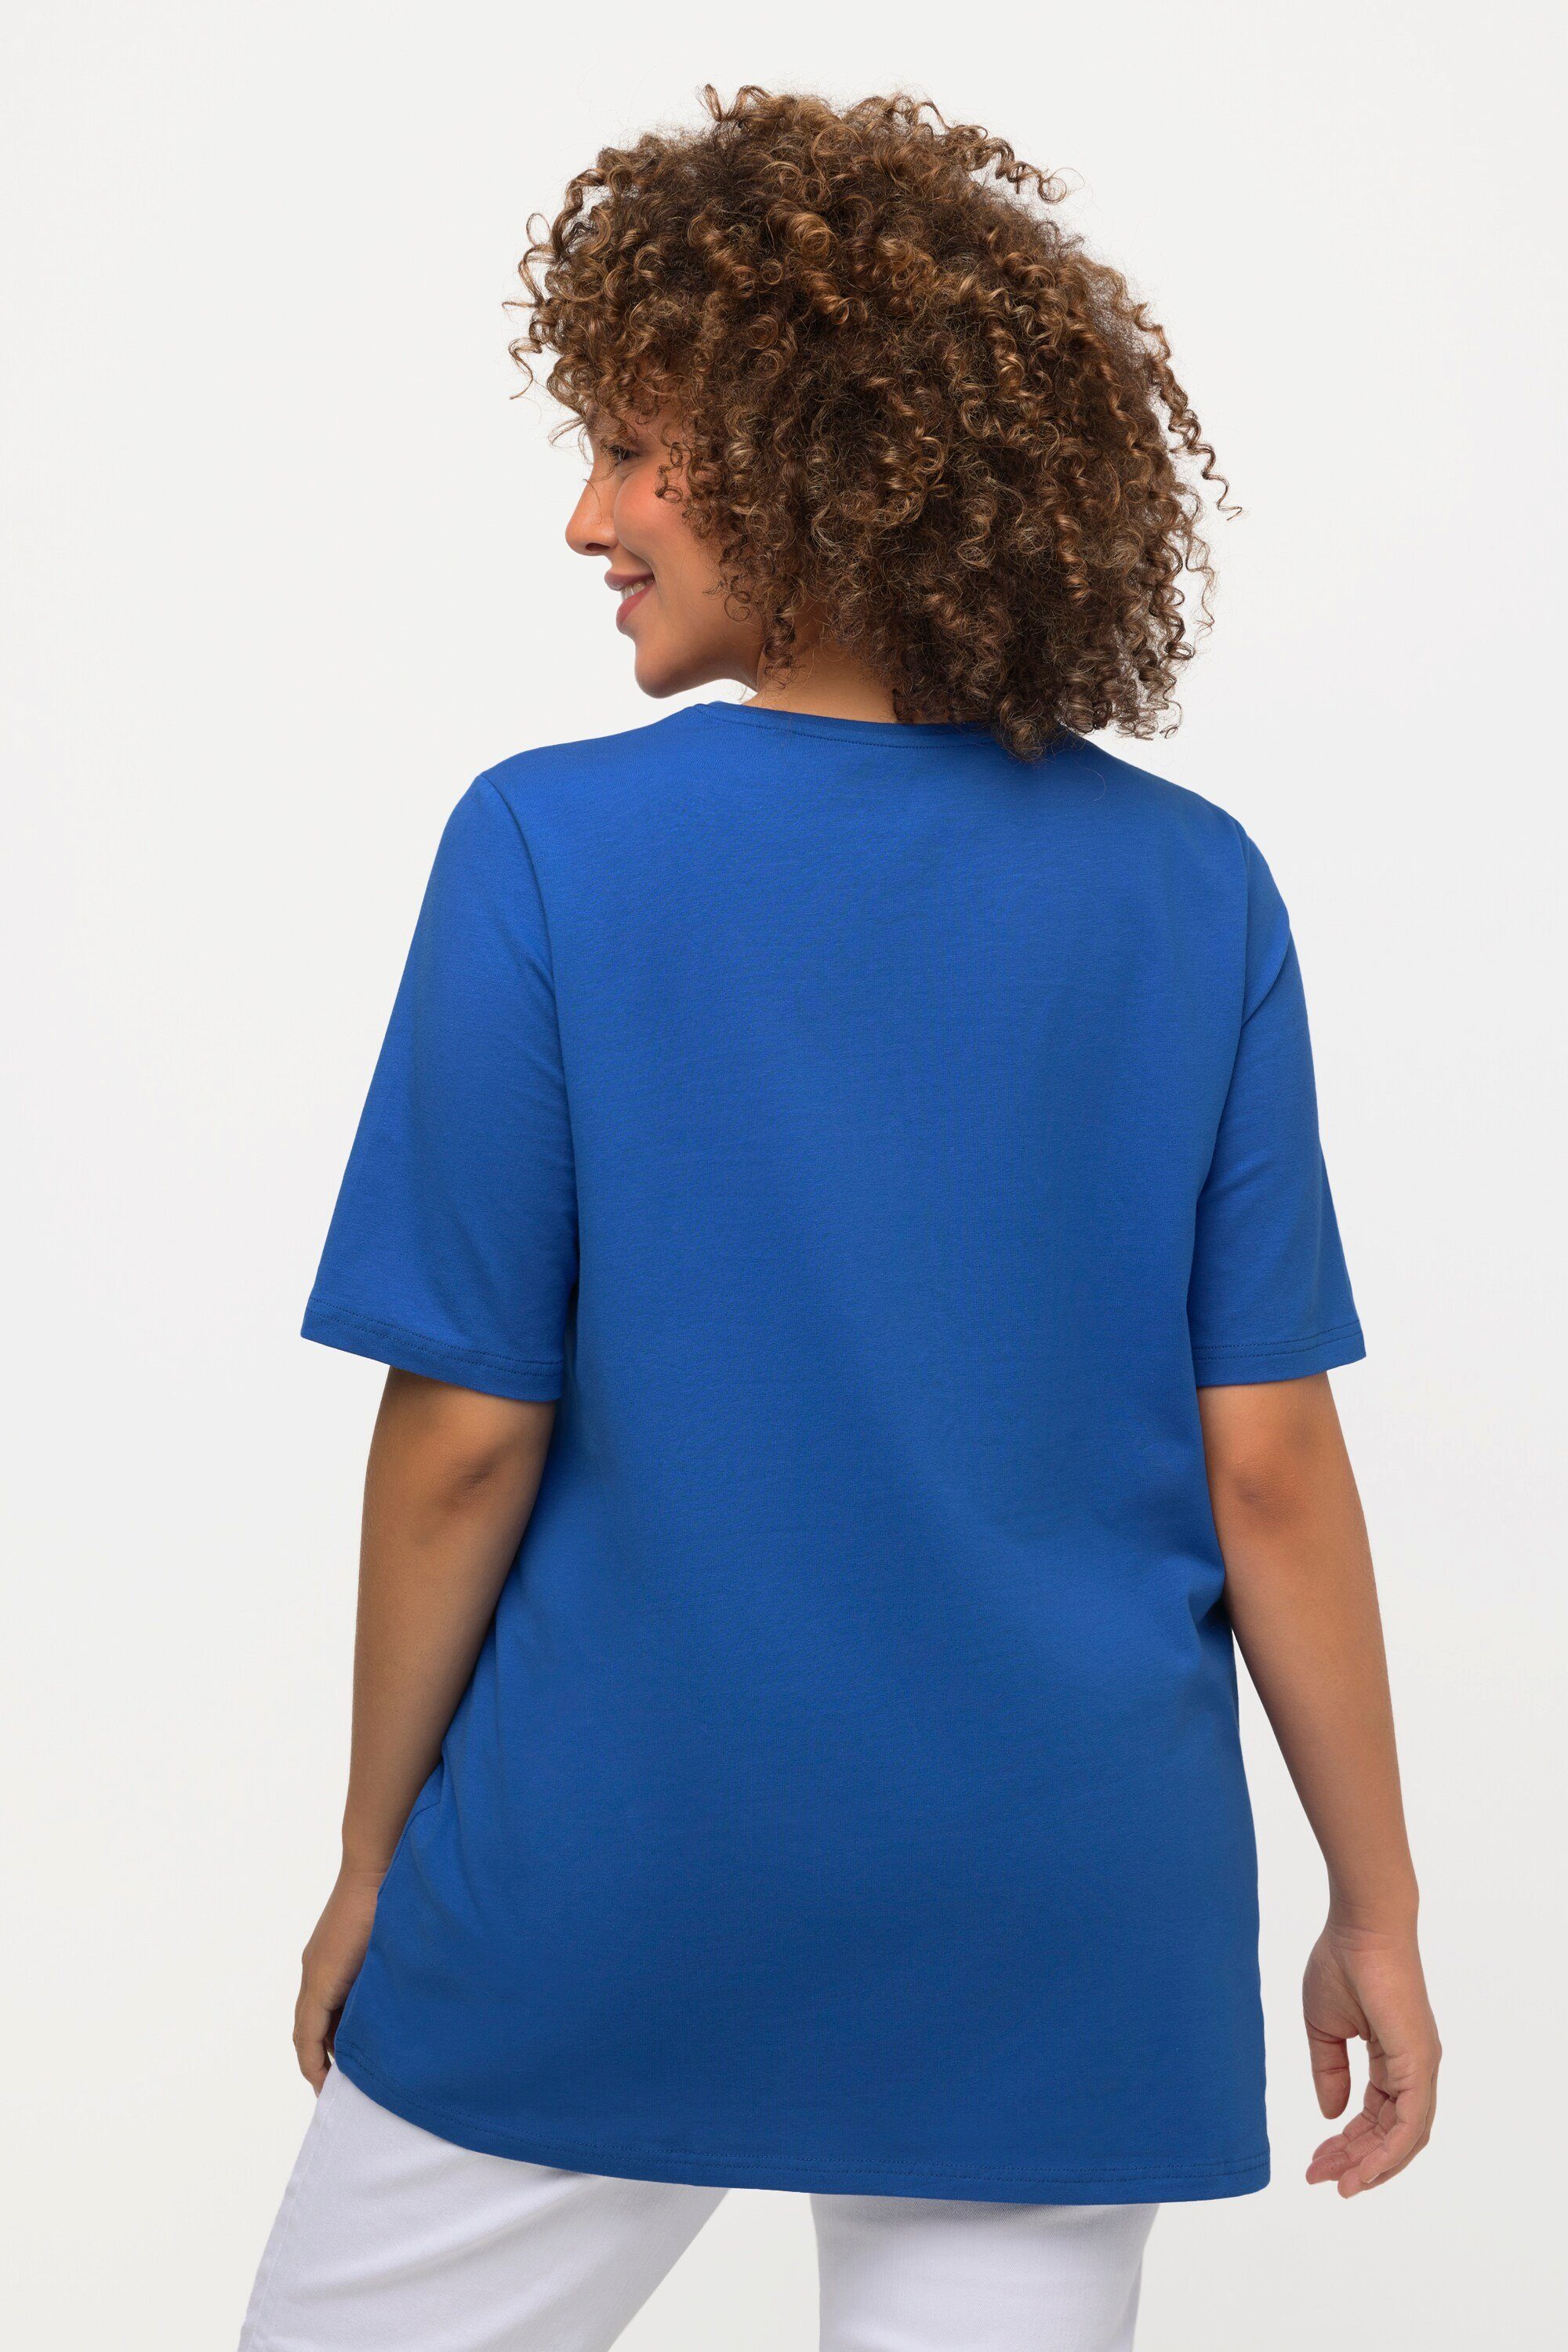 Halbarm kobalt Rundhalsausschnitt Ulla blau Popken A-Linie T-Shirt Rundhalsshirt